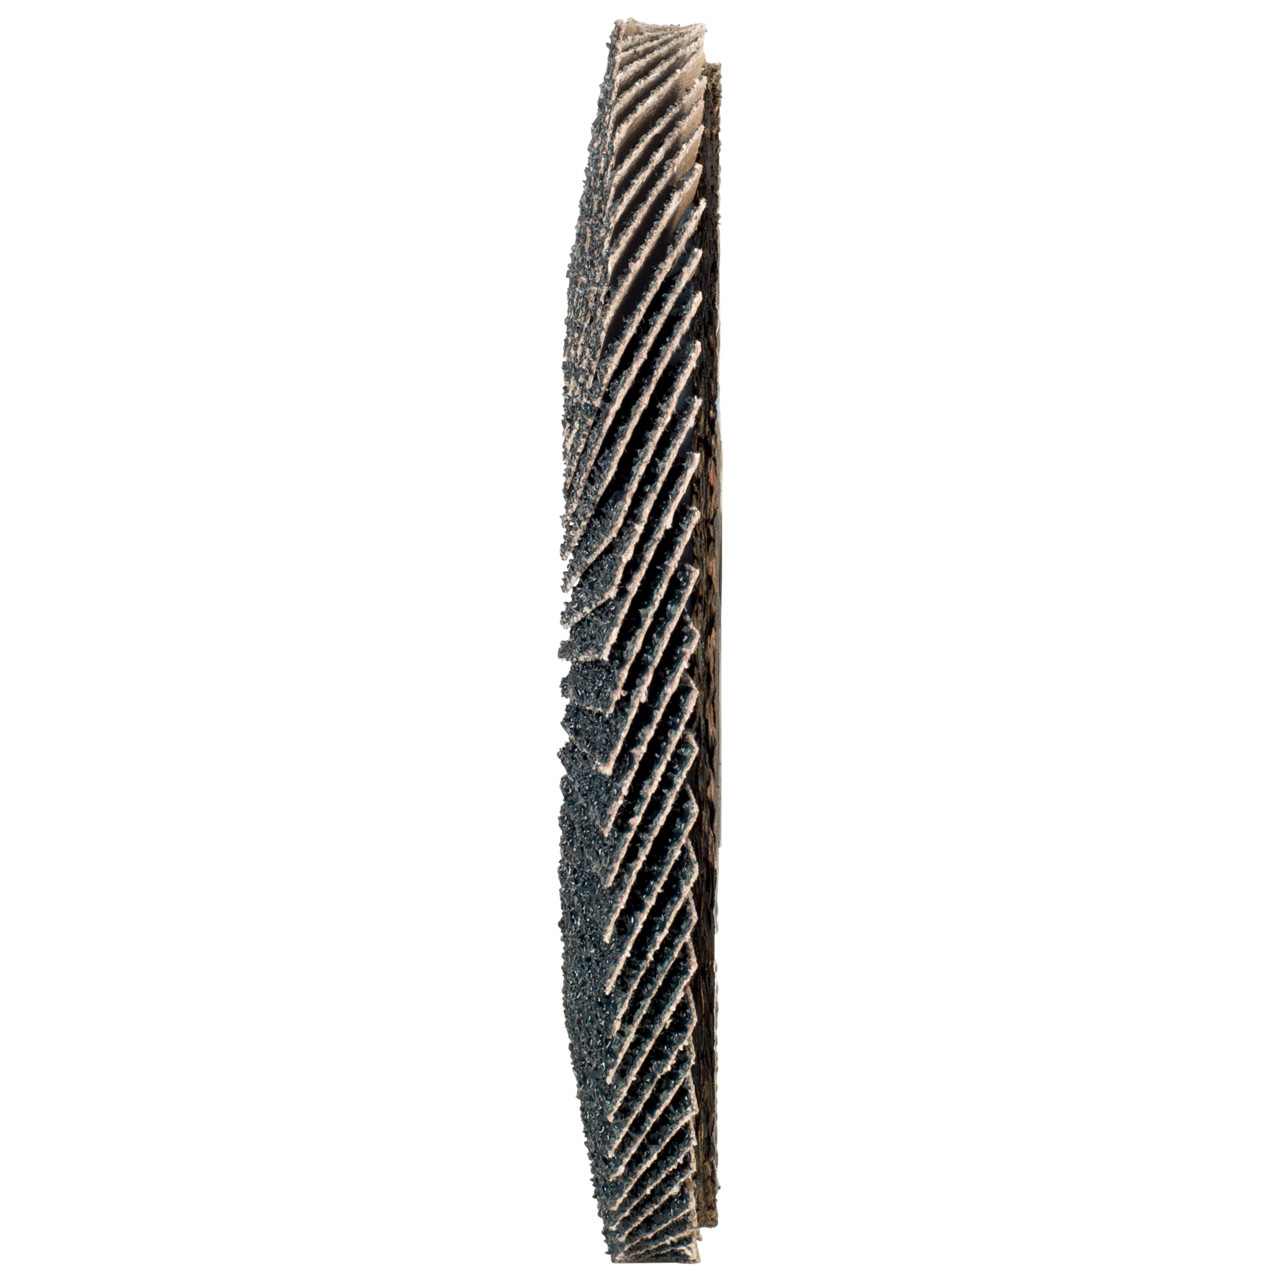 TYROLIT Fächerscheibe DxH 125x22,2 2in1 für Stahl & Edelstahl, P80, Form: 28A - gerade Ausführung (Glasfaserträgerkörperausführung), Art. 668694